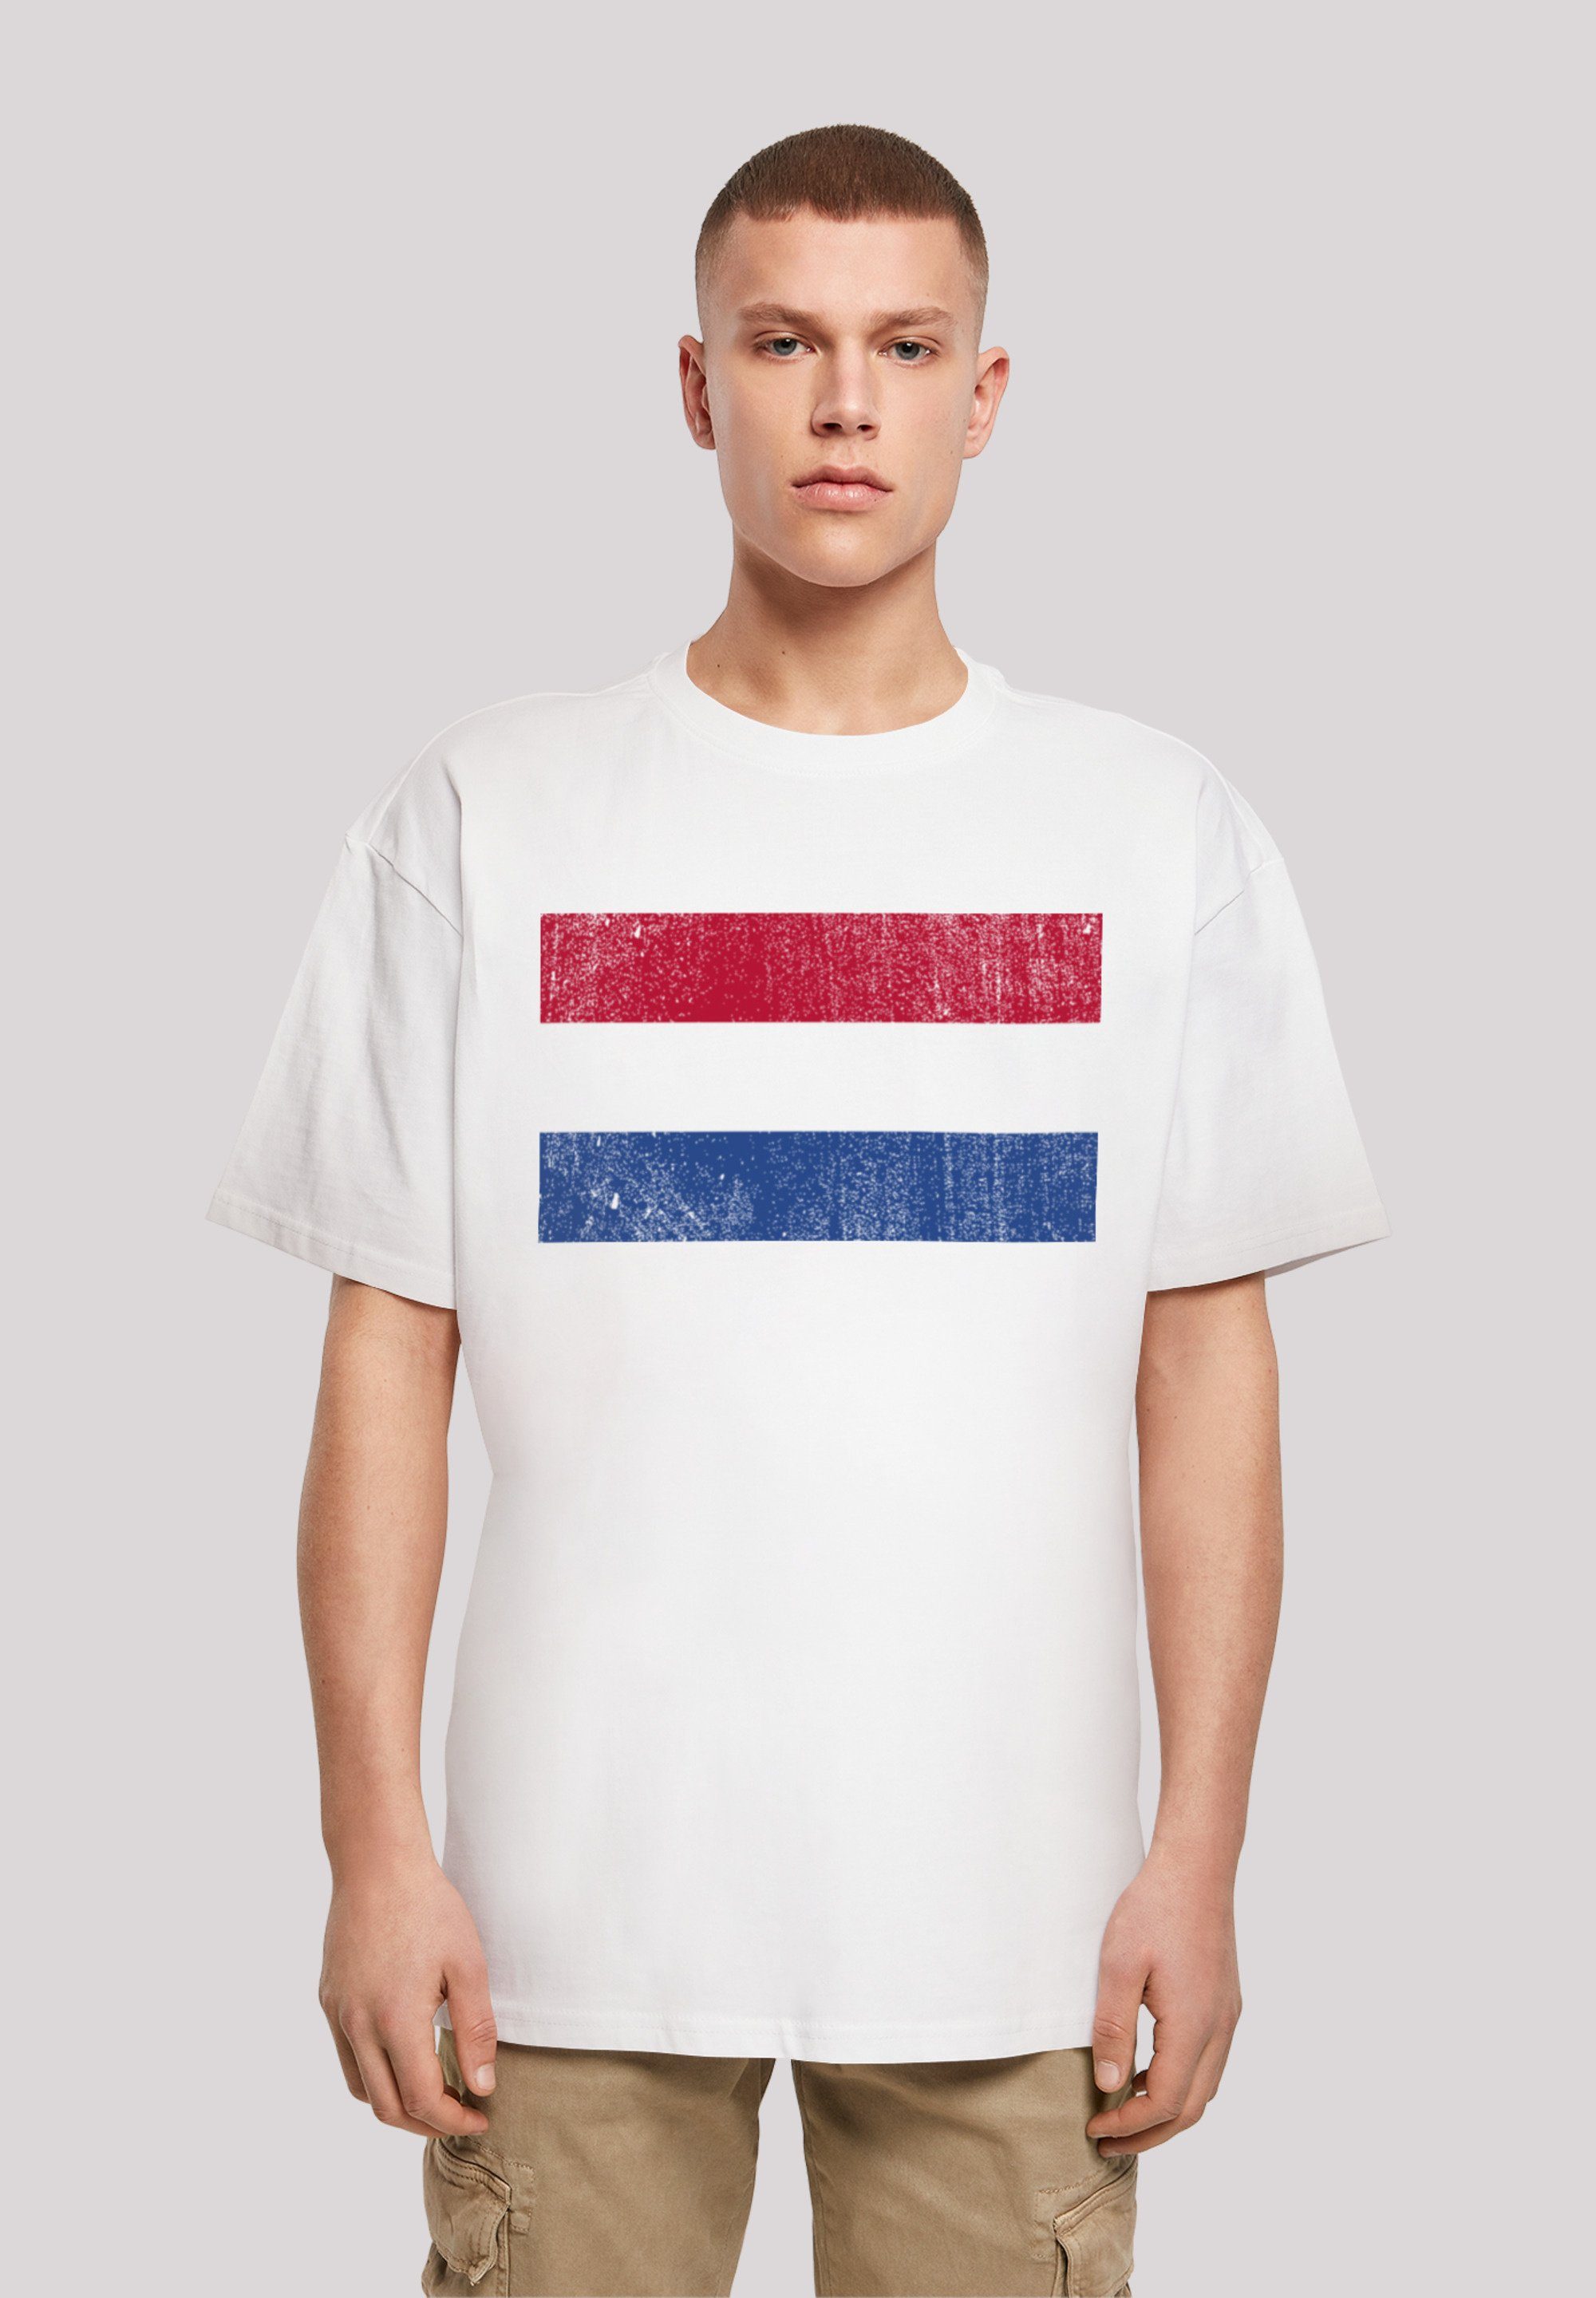 Passform Weite Schultern Flagge distressed Print, T-Shirt und NIederlande Holland F4NT4STIC überschnittene Netherlands